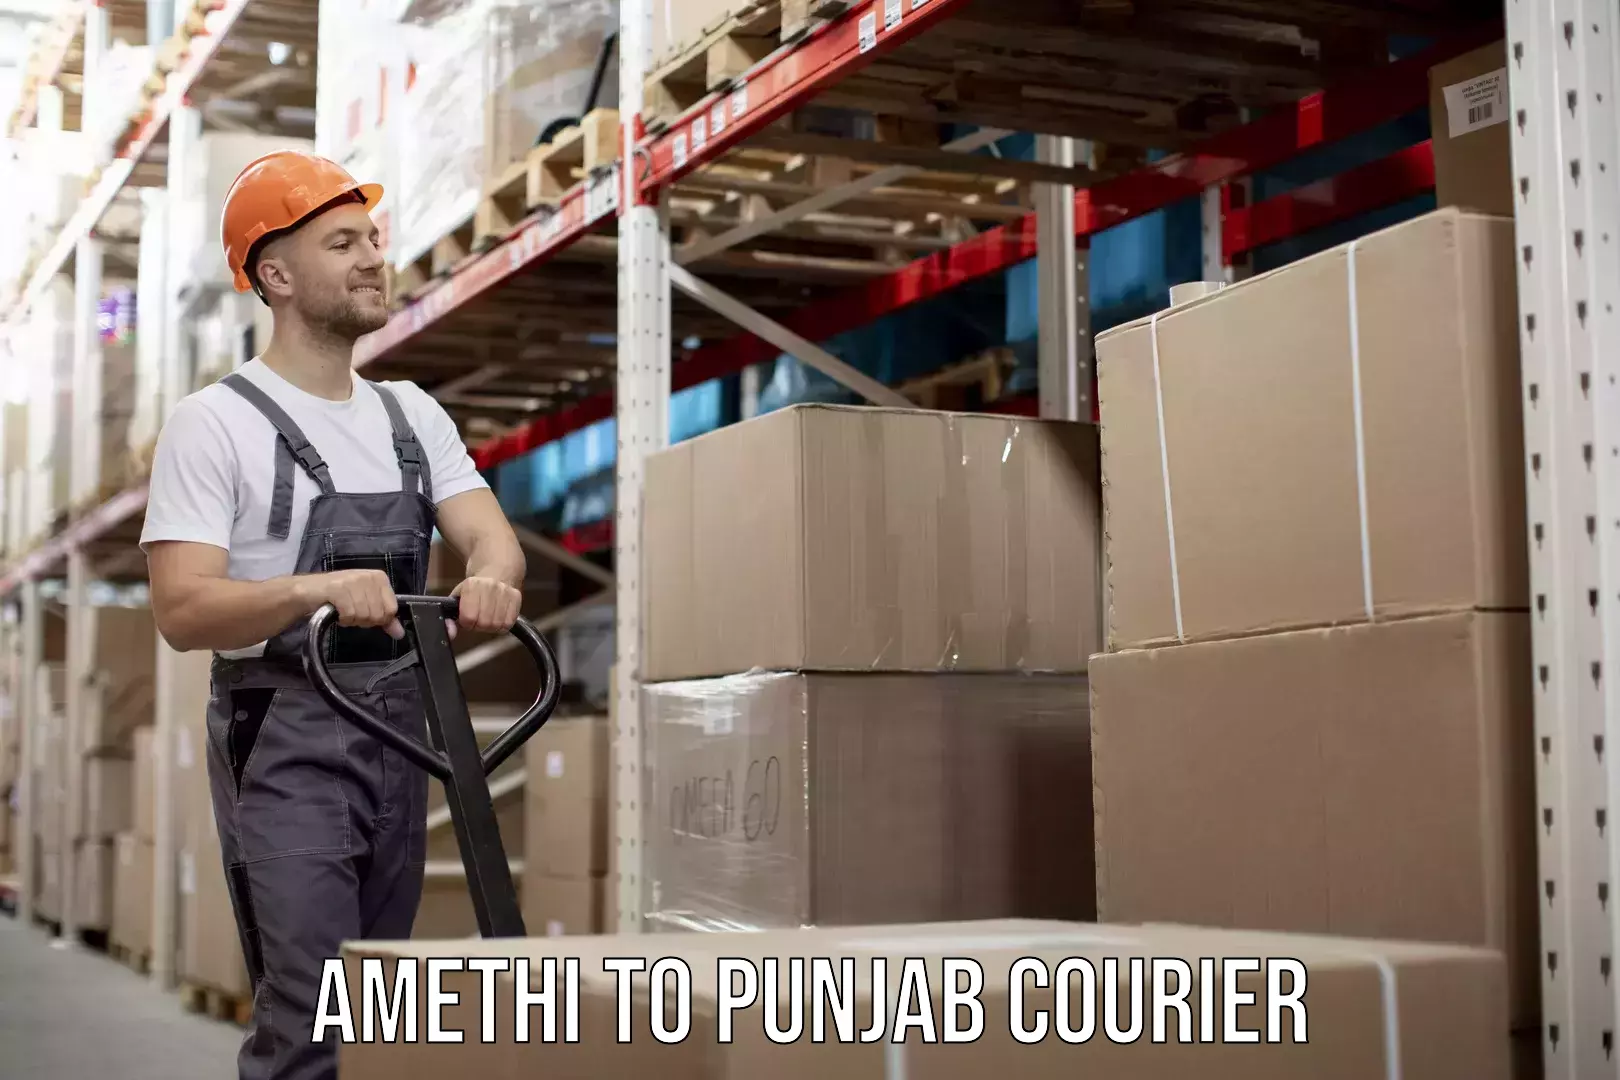 24/7 shipping services Amethi to Punjab